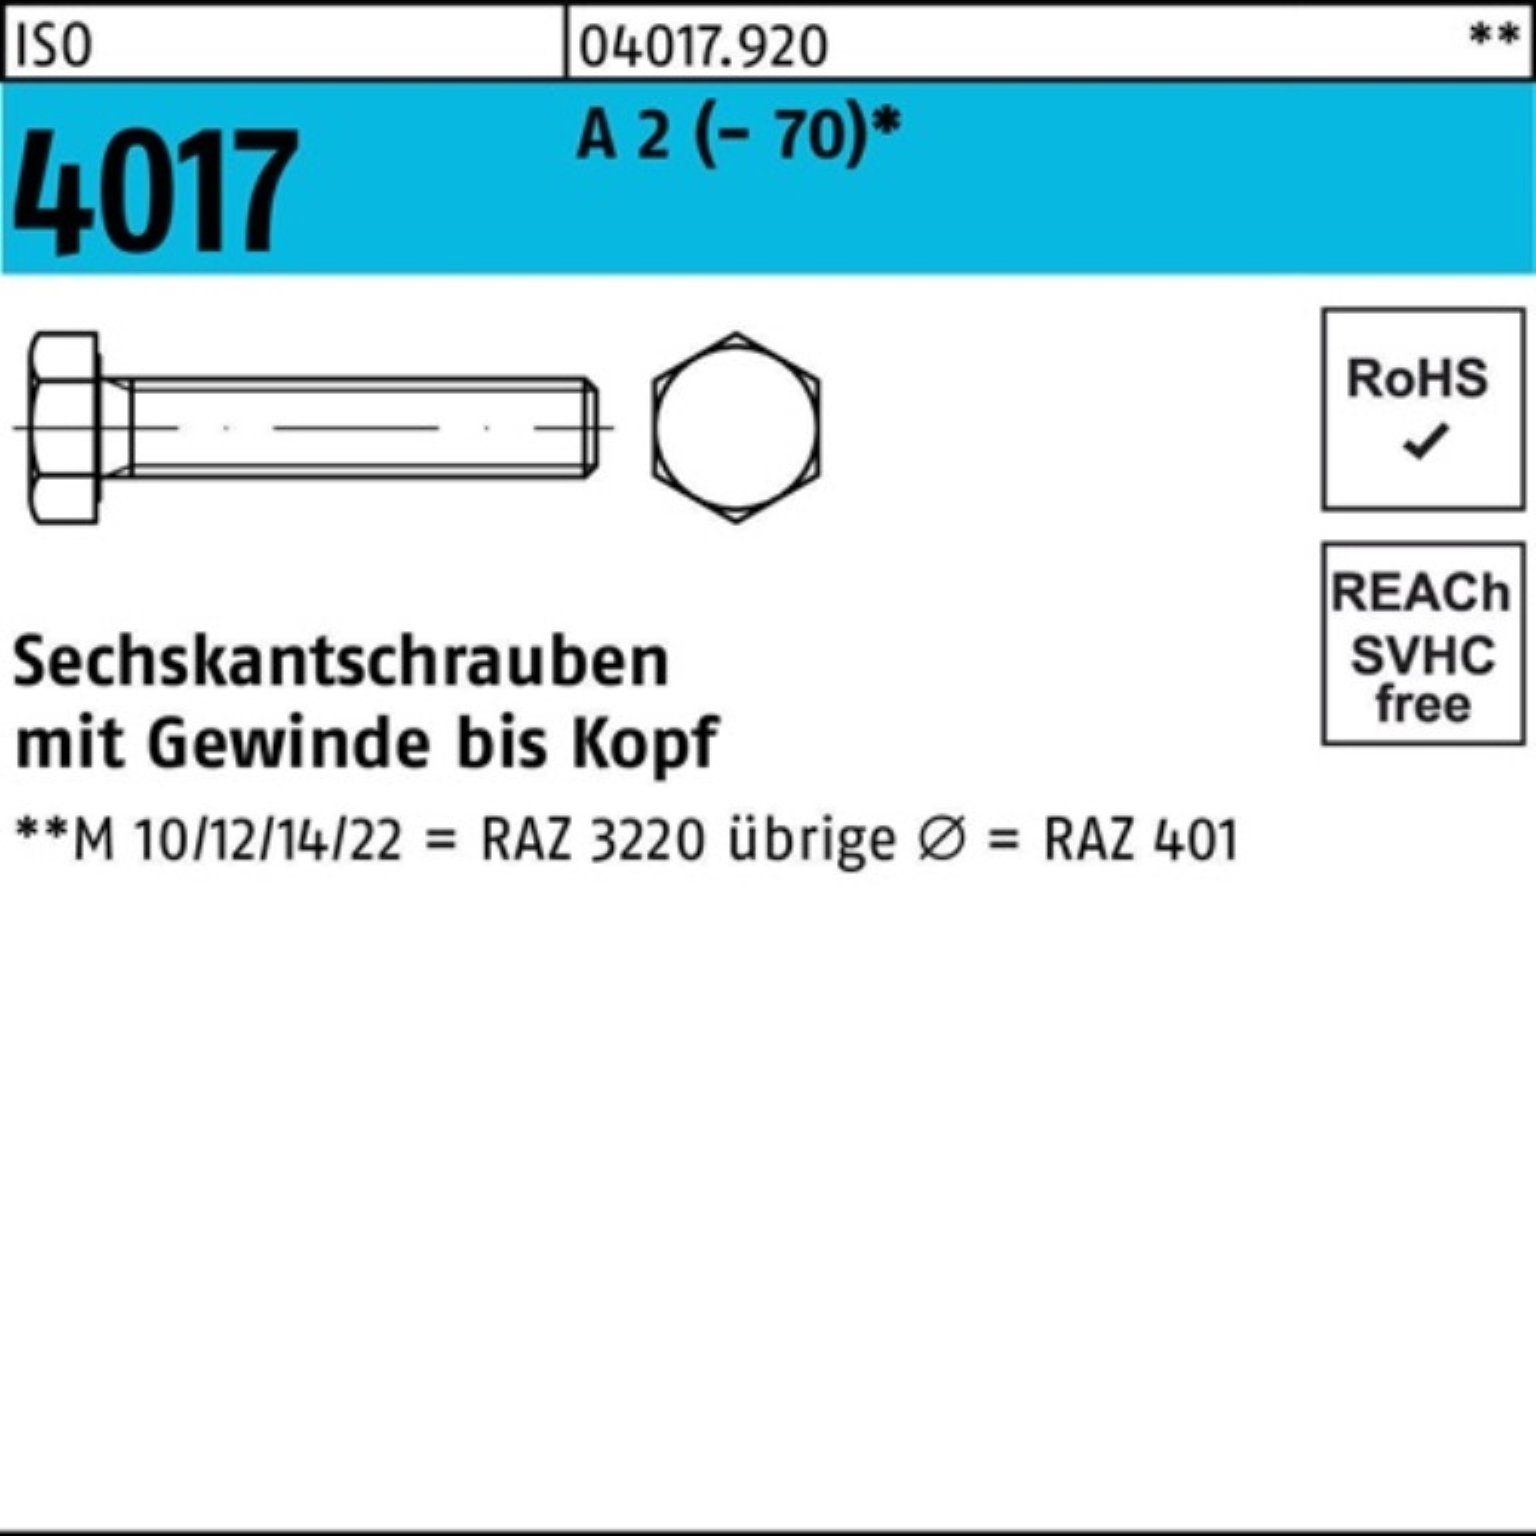 Bufab Sechskantschraube 100er Pack Sechskantschraube ISO 4017 VG M20x 150 A 2 (70) 10 Stück